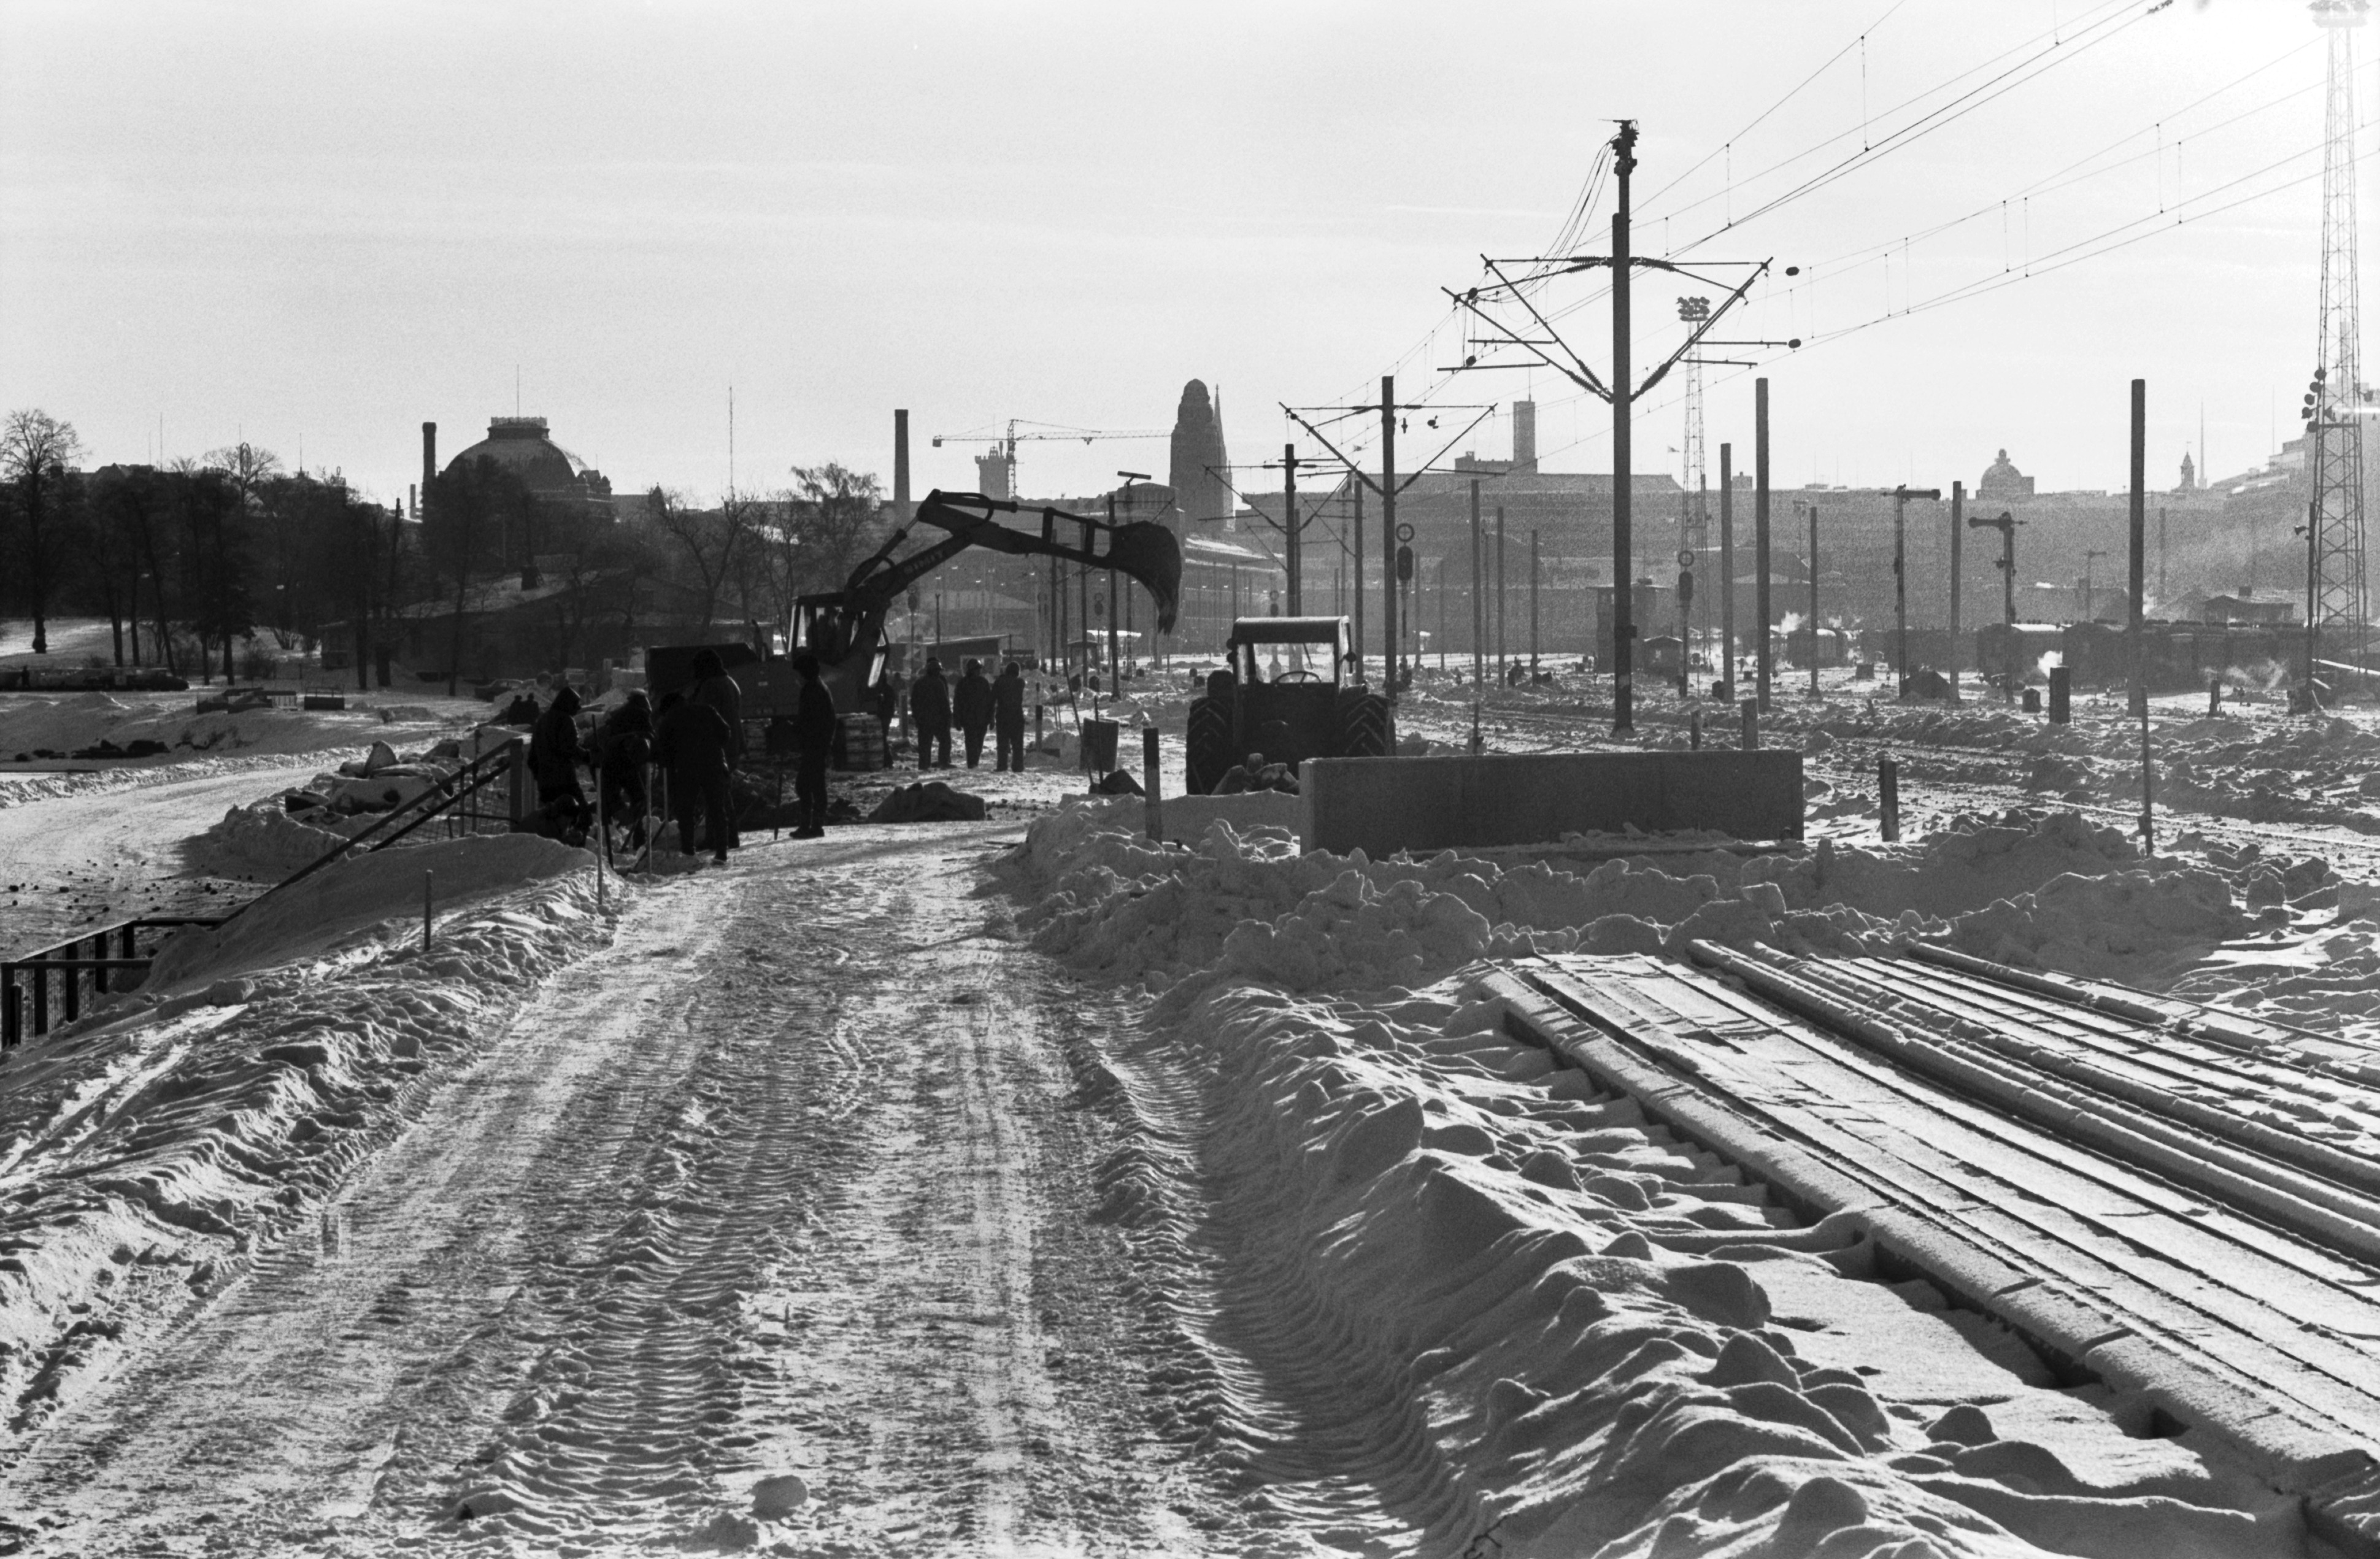 Miehiä töissä talvella lumisen pääradan varrella Eläintarhanlahden kohdalla. Näkymä Linnunlaulun suunnalta etelään. Taustalla Helsingin rautatieasema.